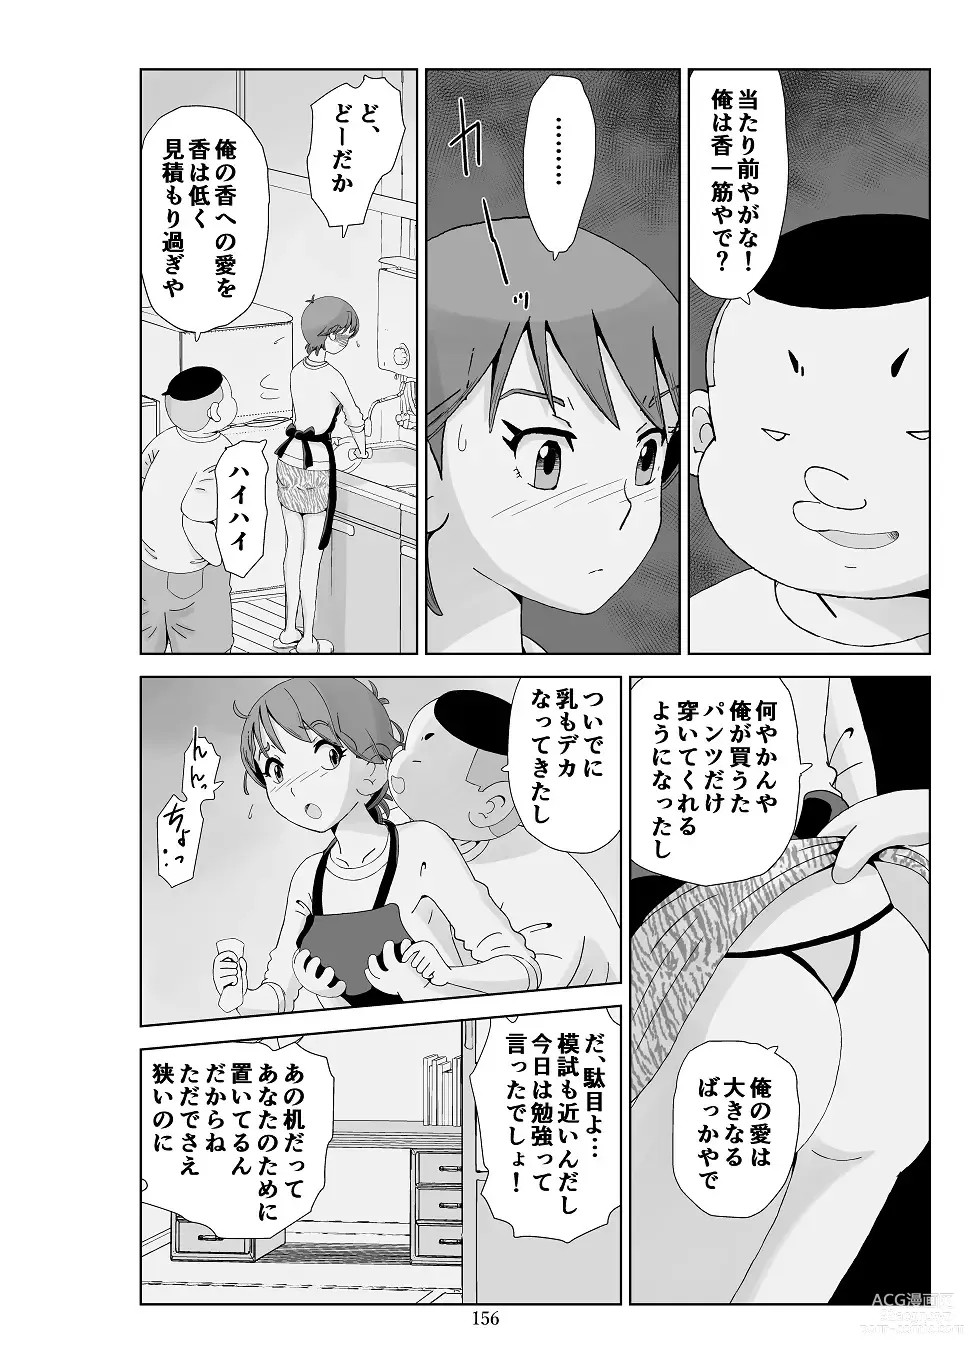 Page 157 of doujinshi Futoshi 3